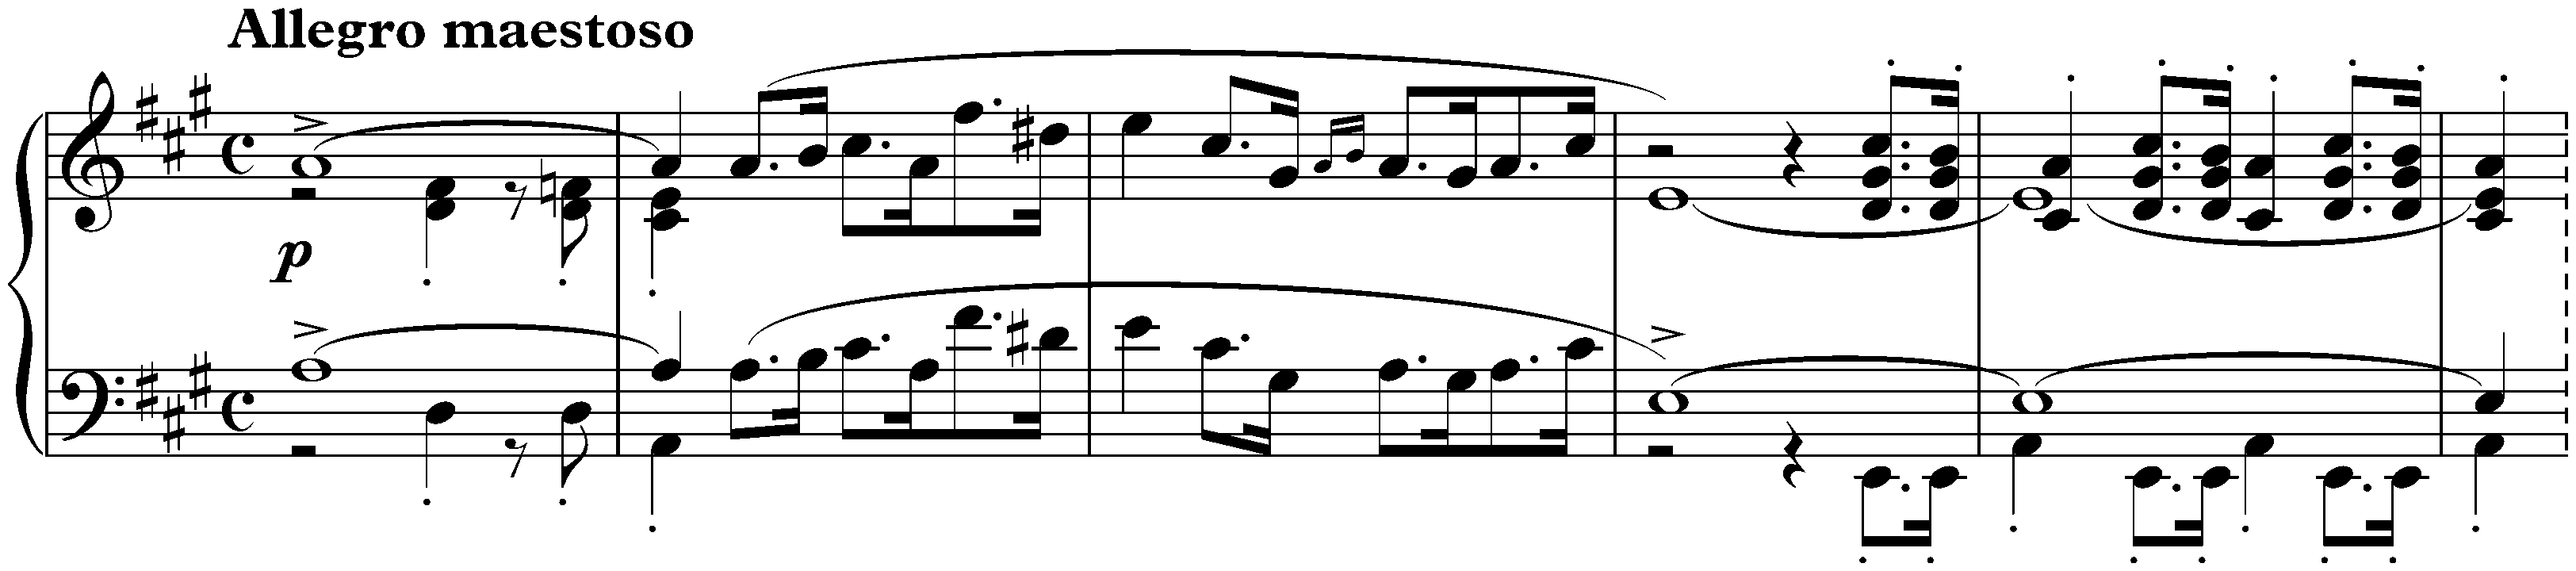 Allegro de Concert in A major, op. 46